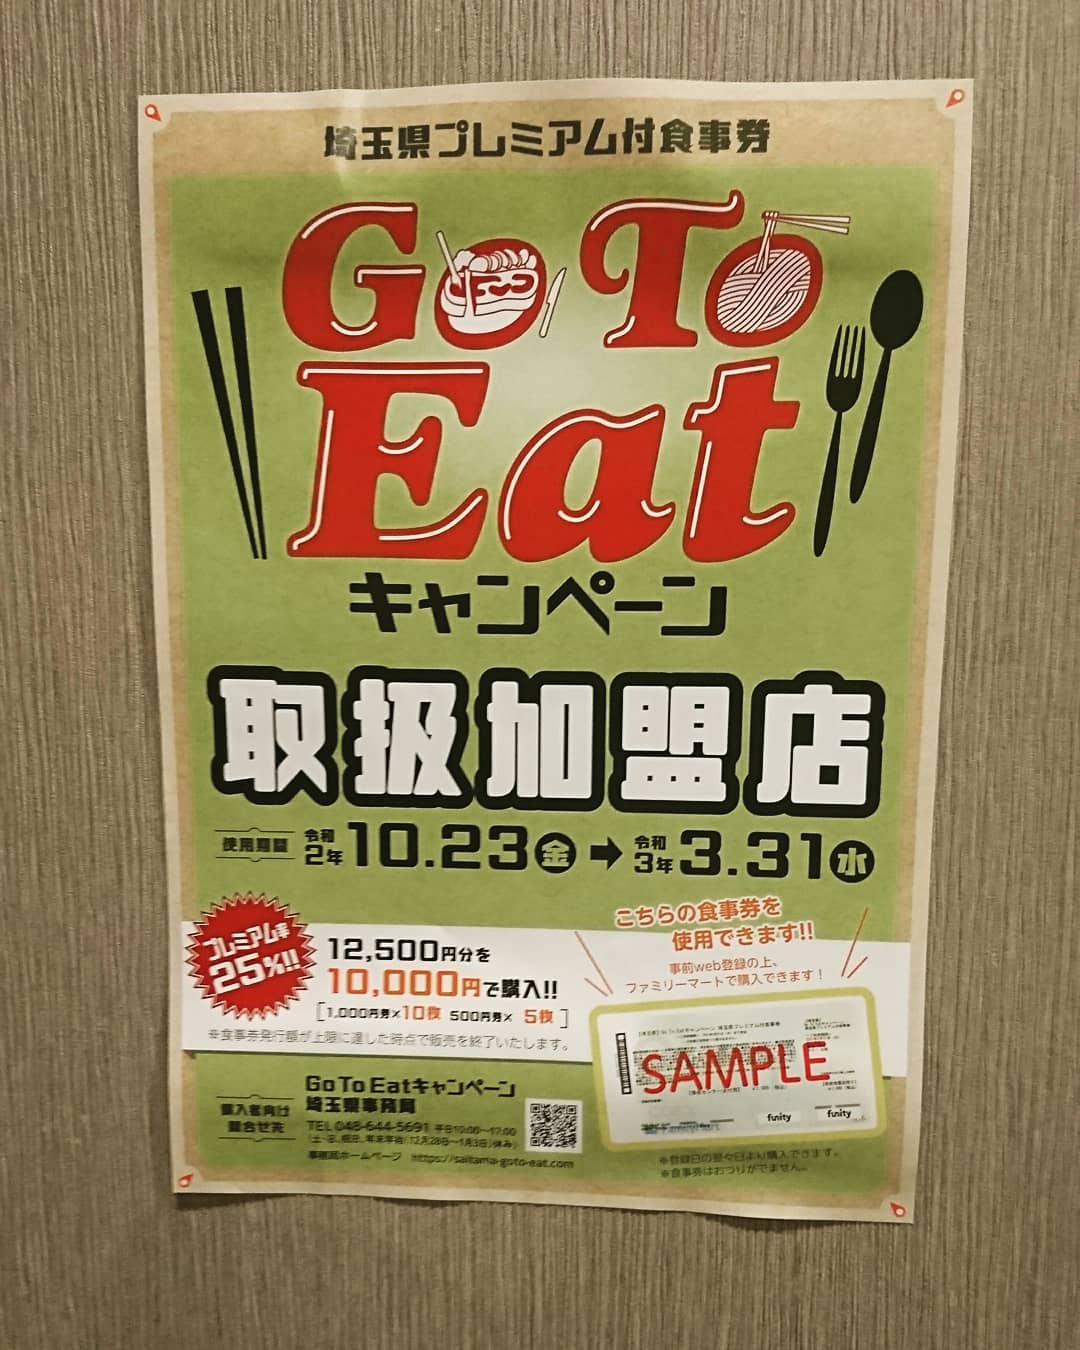 Go TO EAT
熊谷商品券
使えます♪

お持ちの方は是非！！

テイクアウトもまだまだ
やってるので
使って下さい♪

そうだ！えんがわに行こう！

TO イート